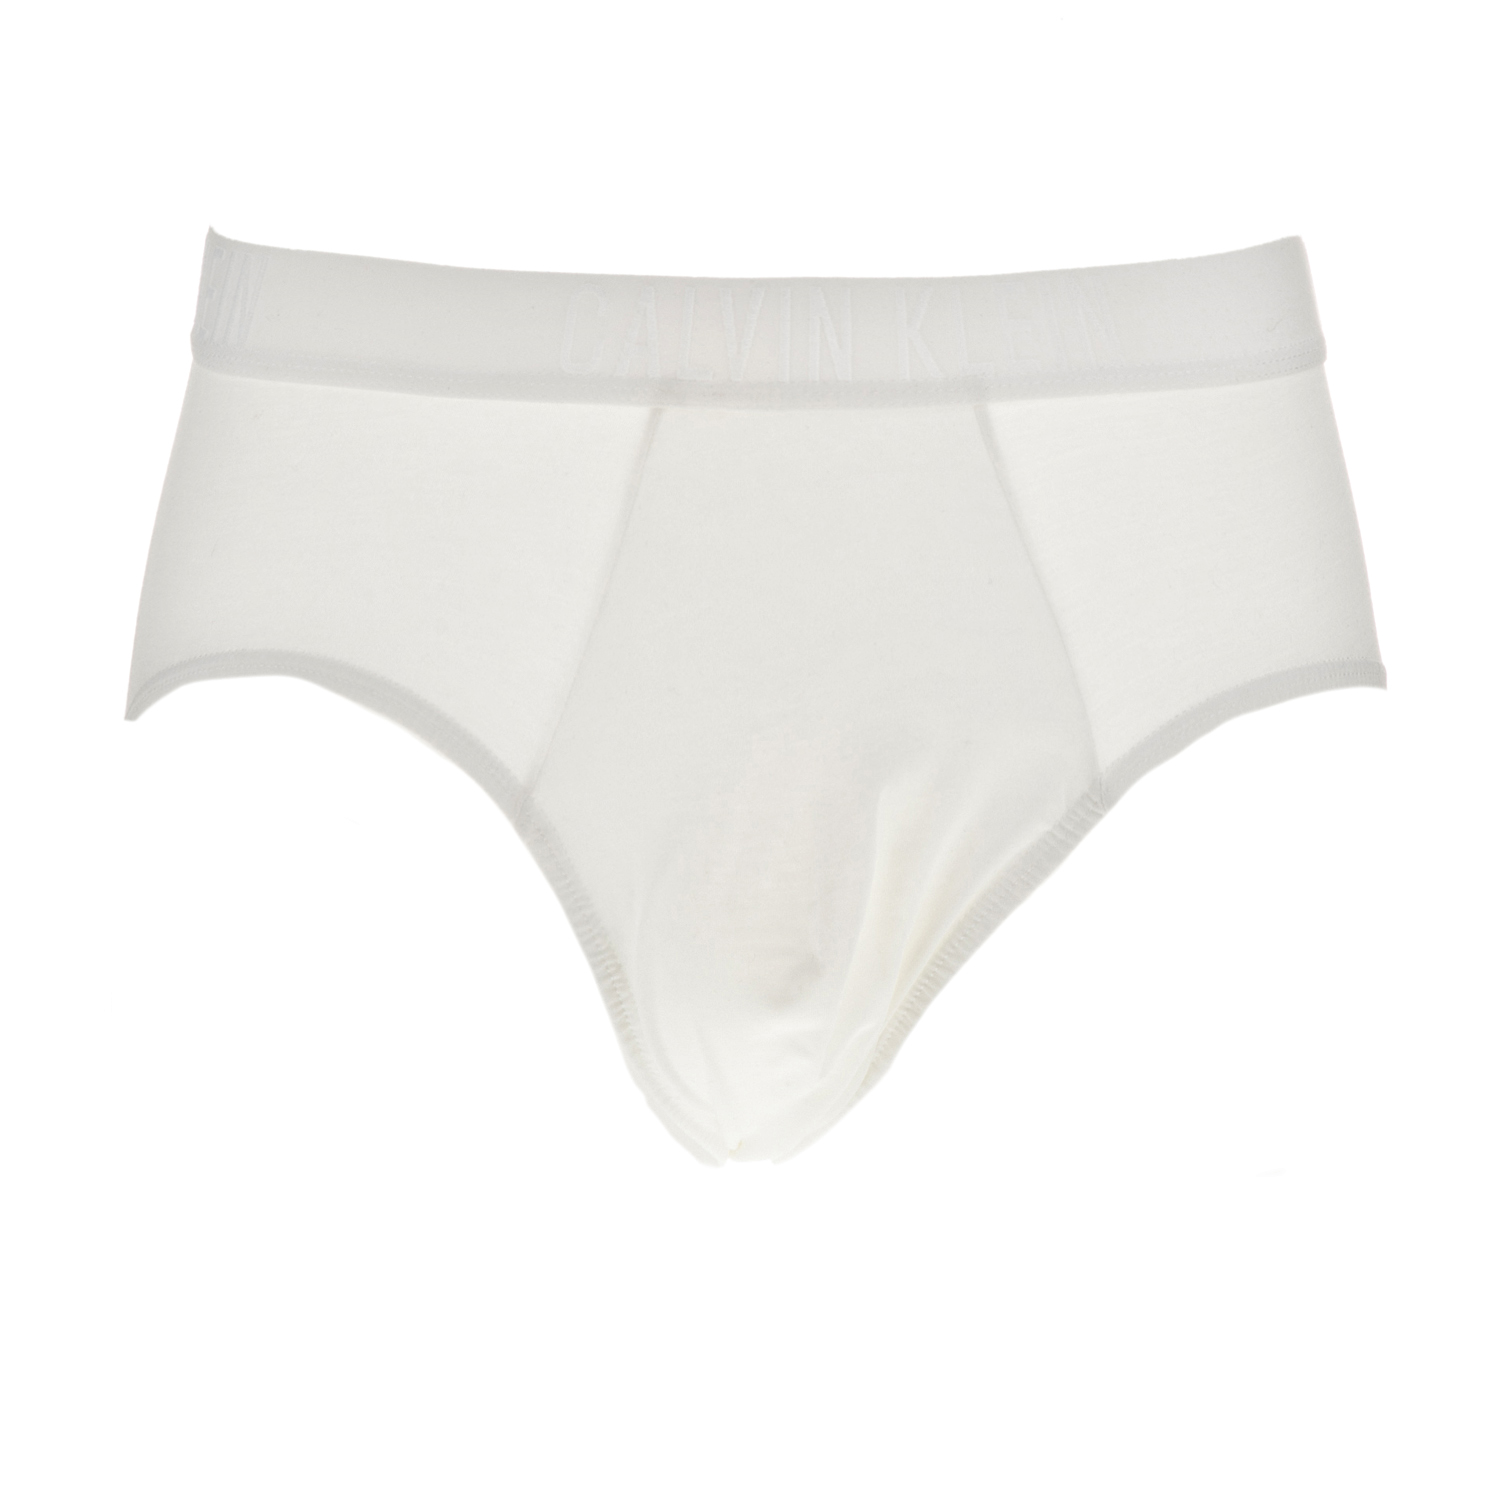 Ανδρικά/Ρούχα/Εσώρουχα/Σλίπ CK UNDERWEAR - Ανδρικό εσώρουχο σλιπ CK Underwear λευκό